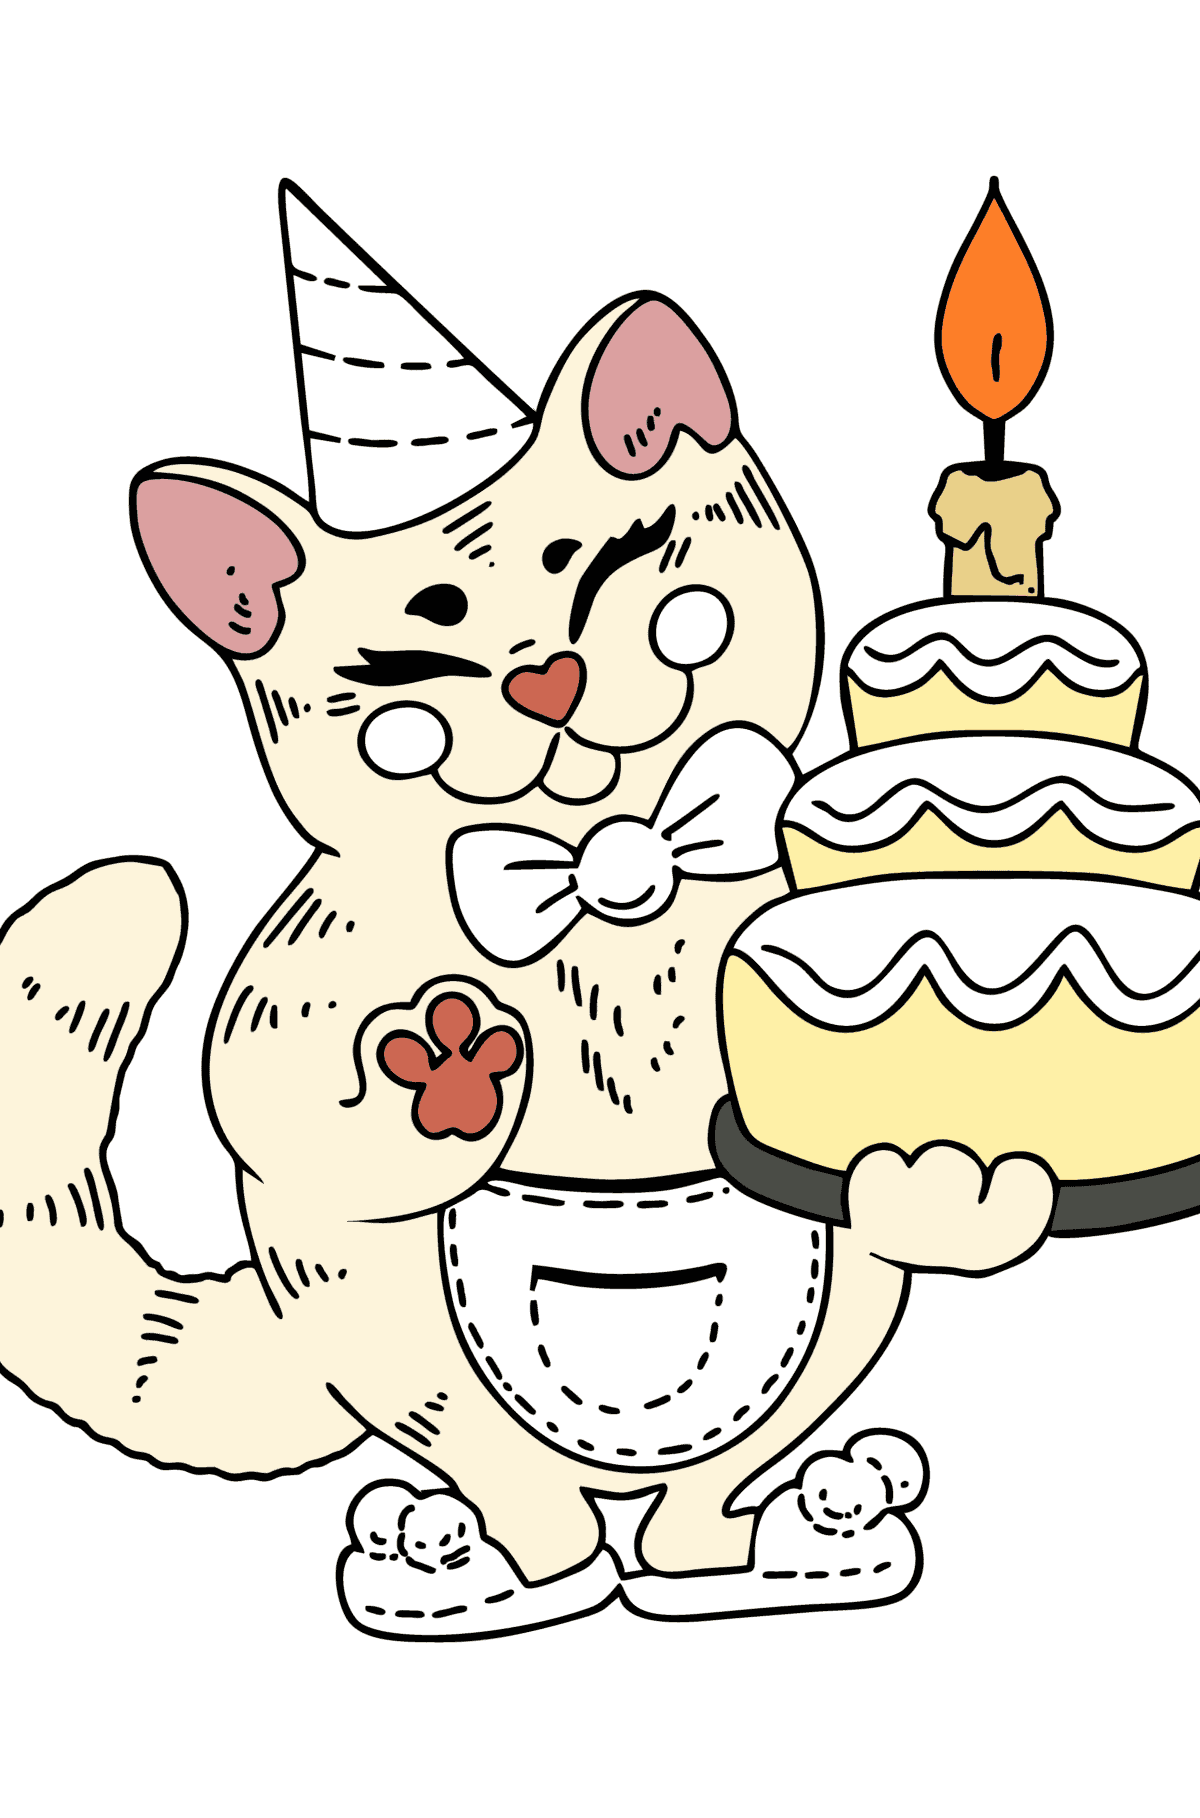 Раскраска - день рождения Кота - Картинки для Детей